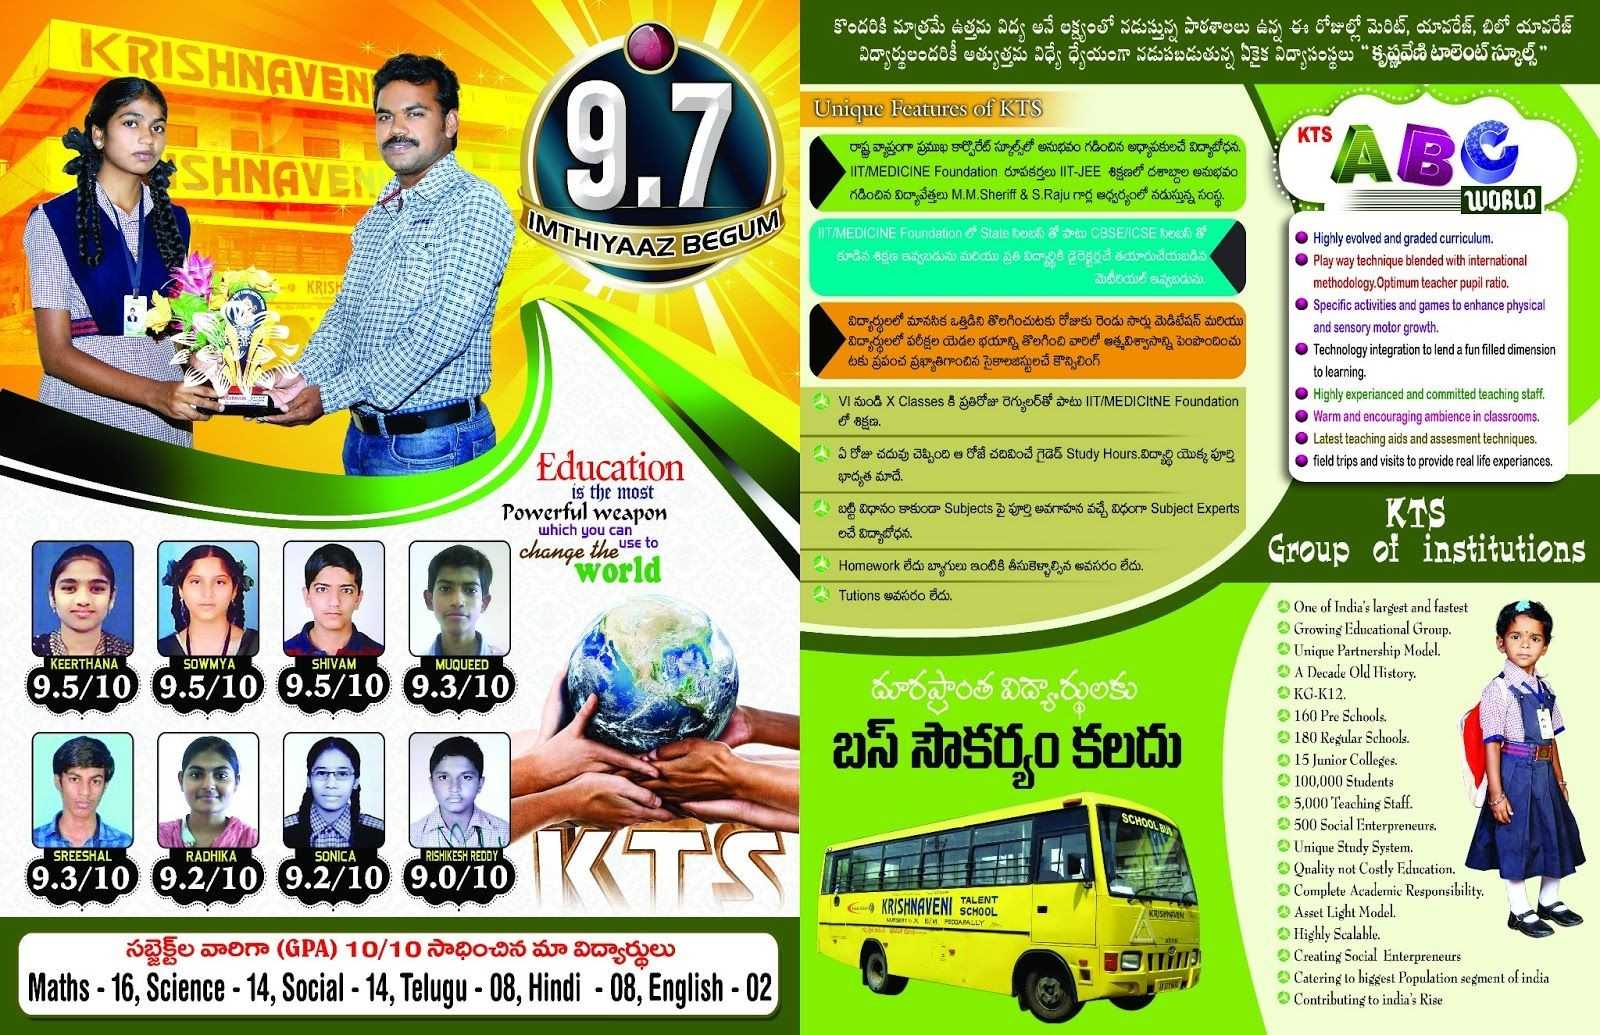 Krishnaveni School Brochure Template Brochures Pinterest For Play School Brochure Templates